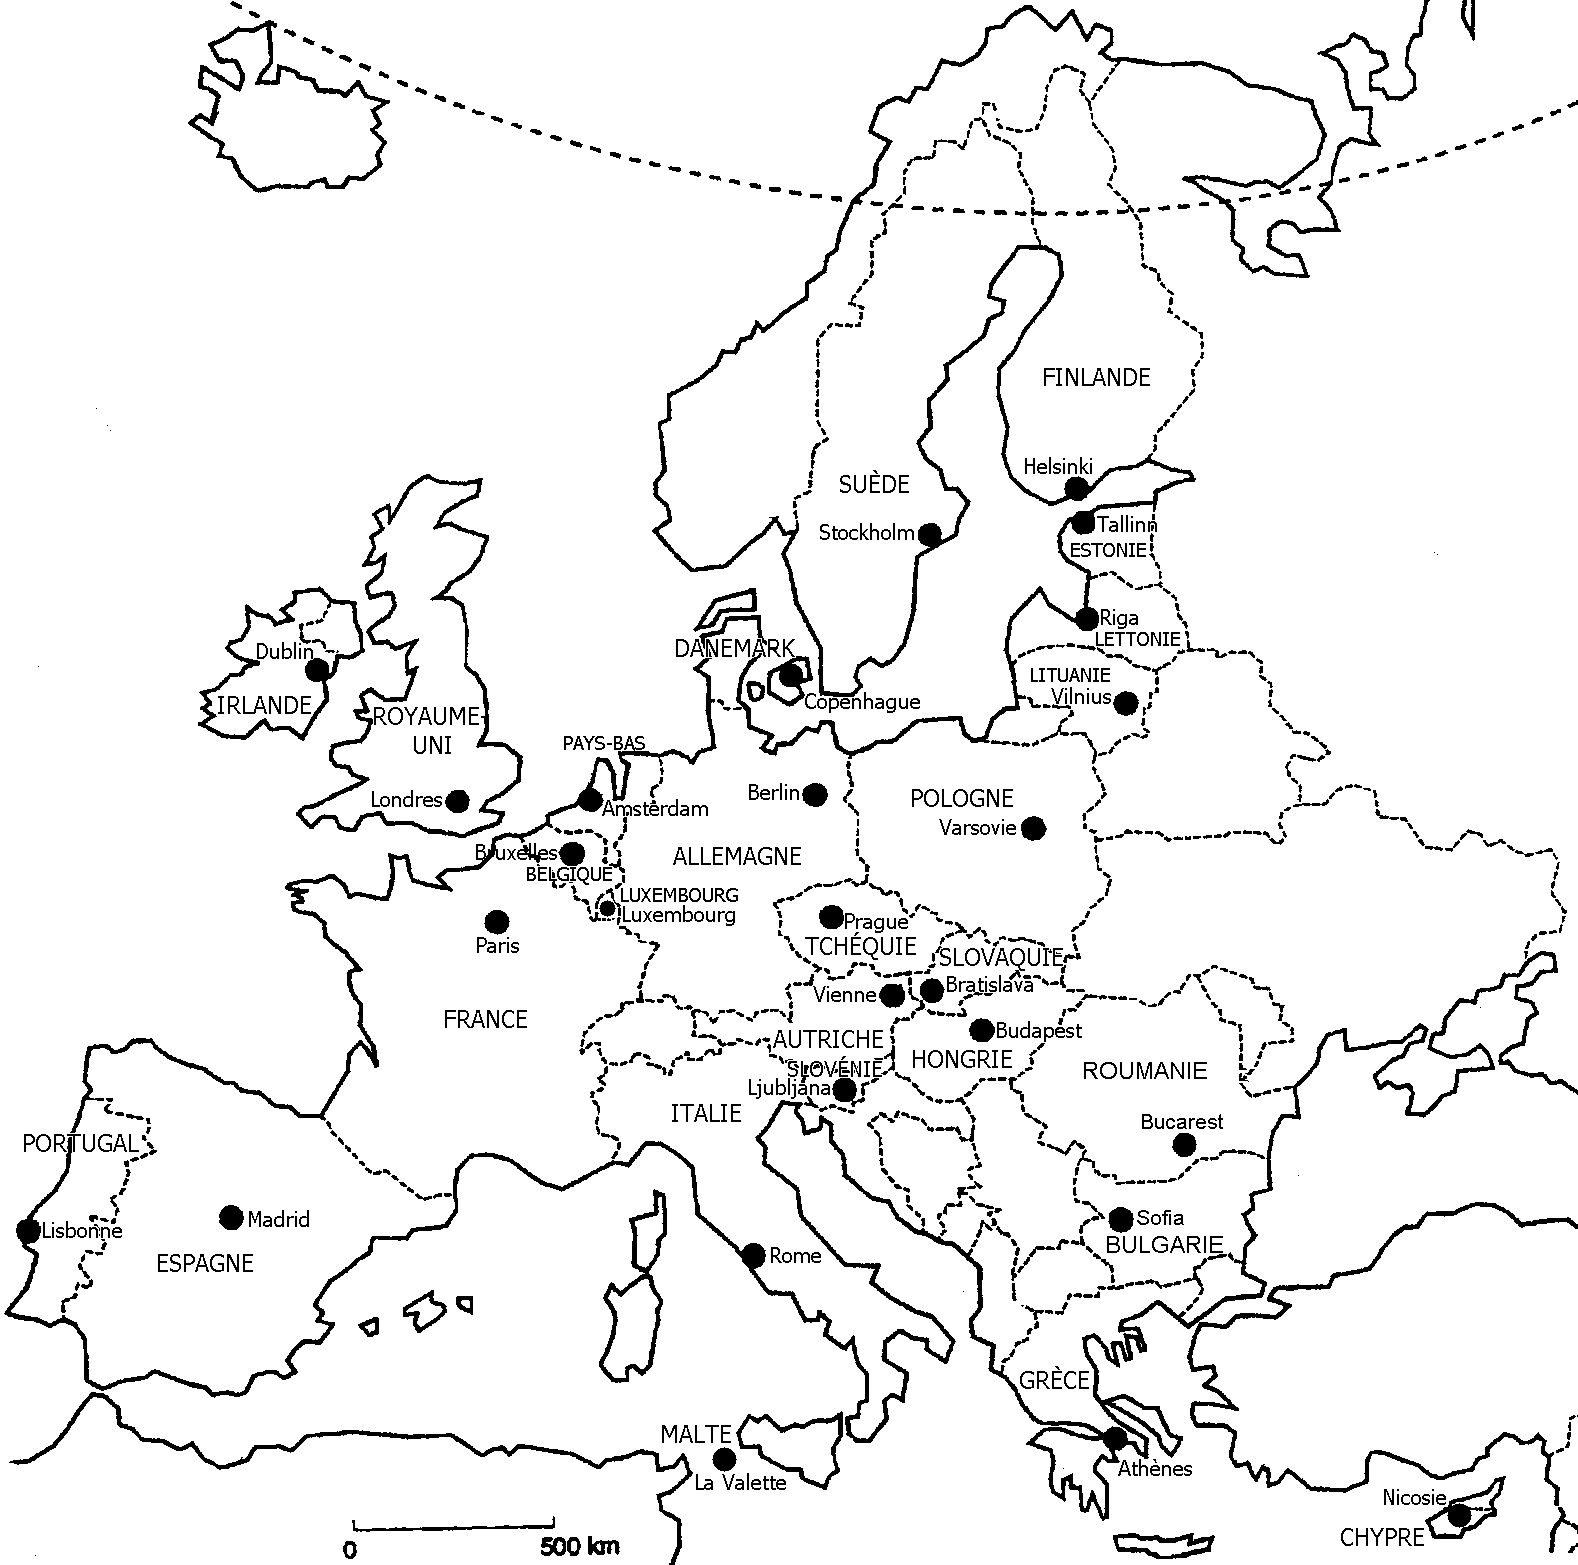 Reconnaître Les 28 Pays De L'union Européenne Et Leurs concernant Carte D Europe Avec Les Capitales